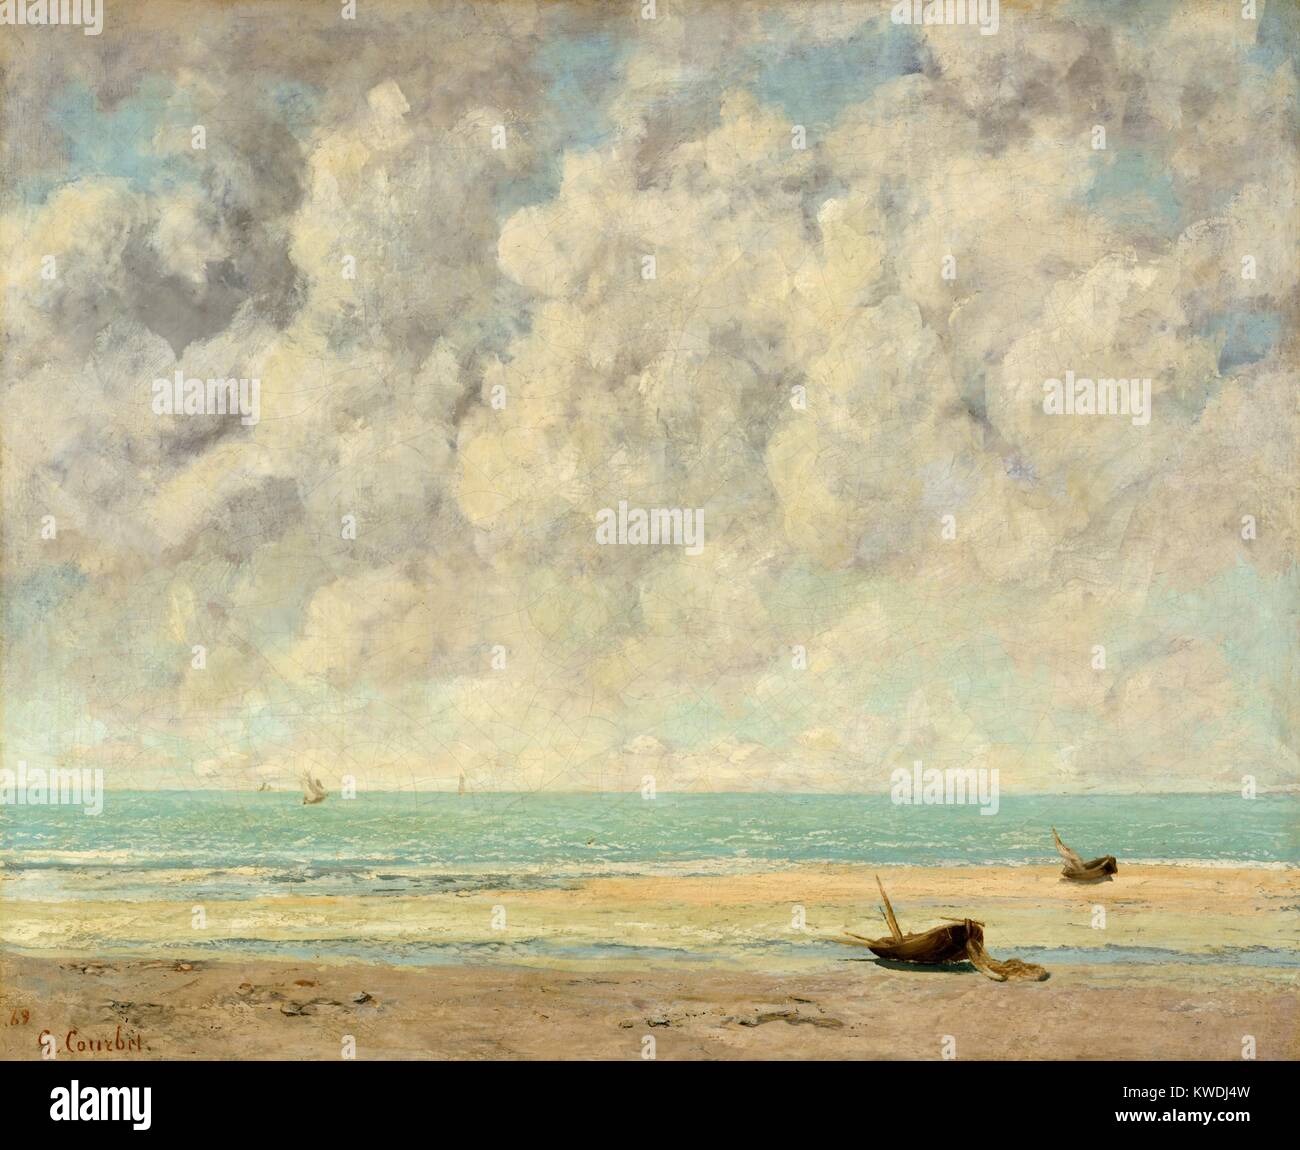 Das ruhige Meer, von Gustave Courbet, 1869, Französische Malerei, Öl auf Leinwand. Der englische Kanal bei Etretat, Normandie im August 1869. Durch diese Zeit Courbet war dankbar für die Arbeit der Impressionisten Manet und Monet, die beeinflusst haben könnten seine leichter mehr leuchtende Farbpalette (BSLOC 2017 9 122) Stockfoto